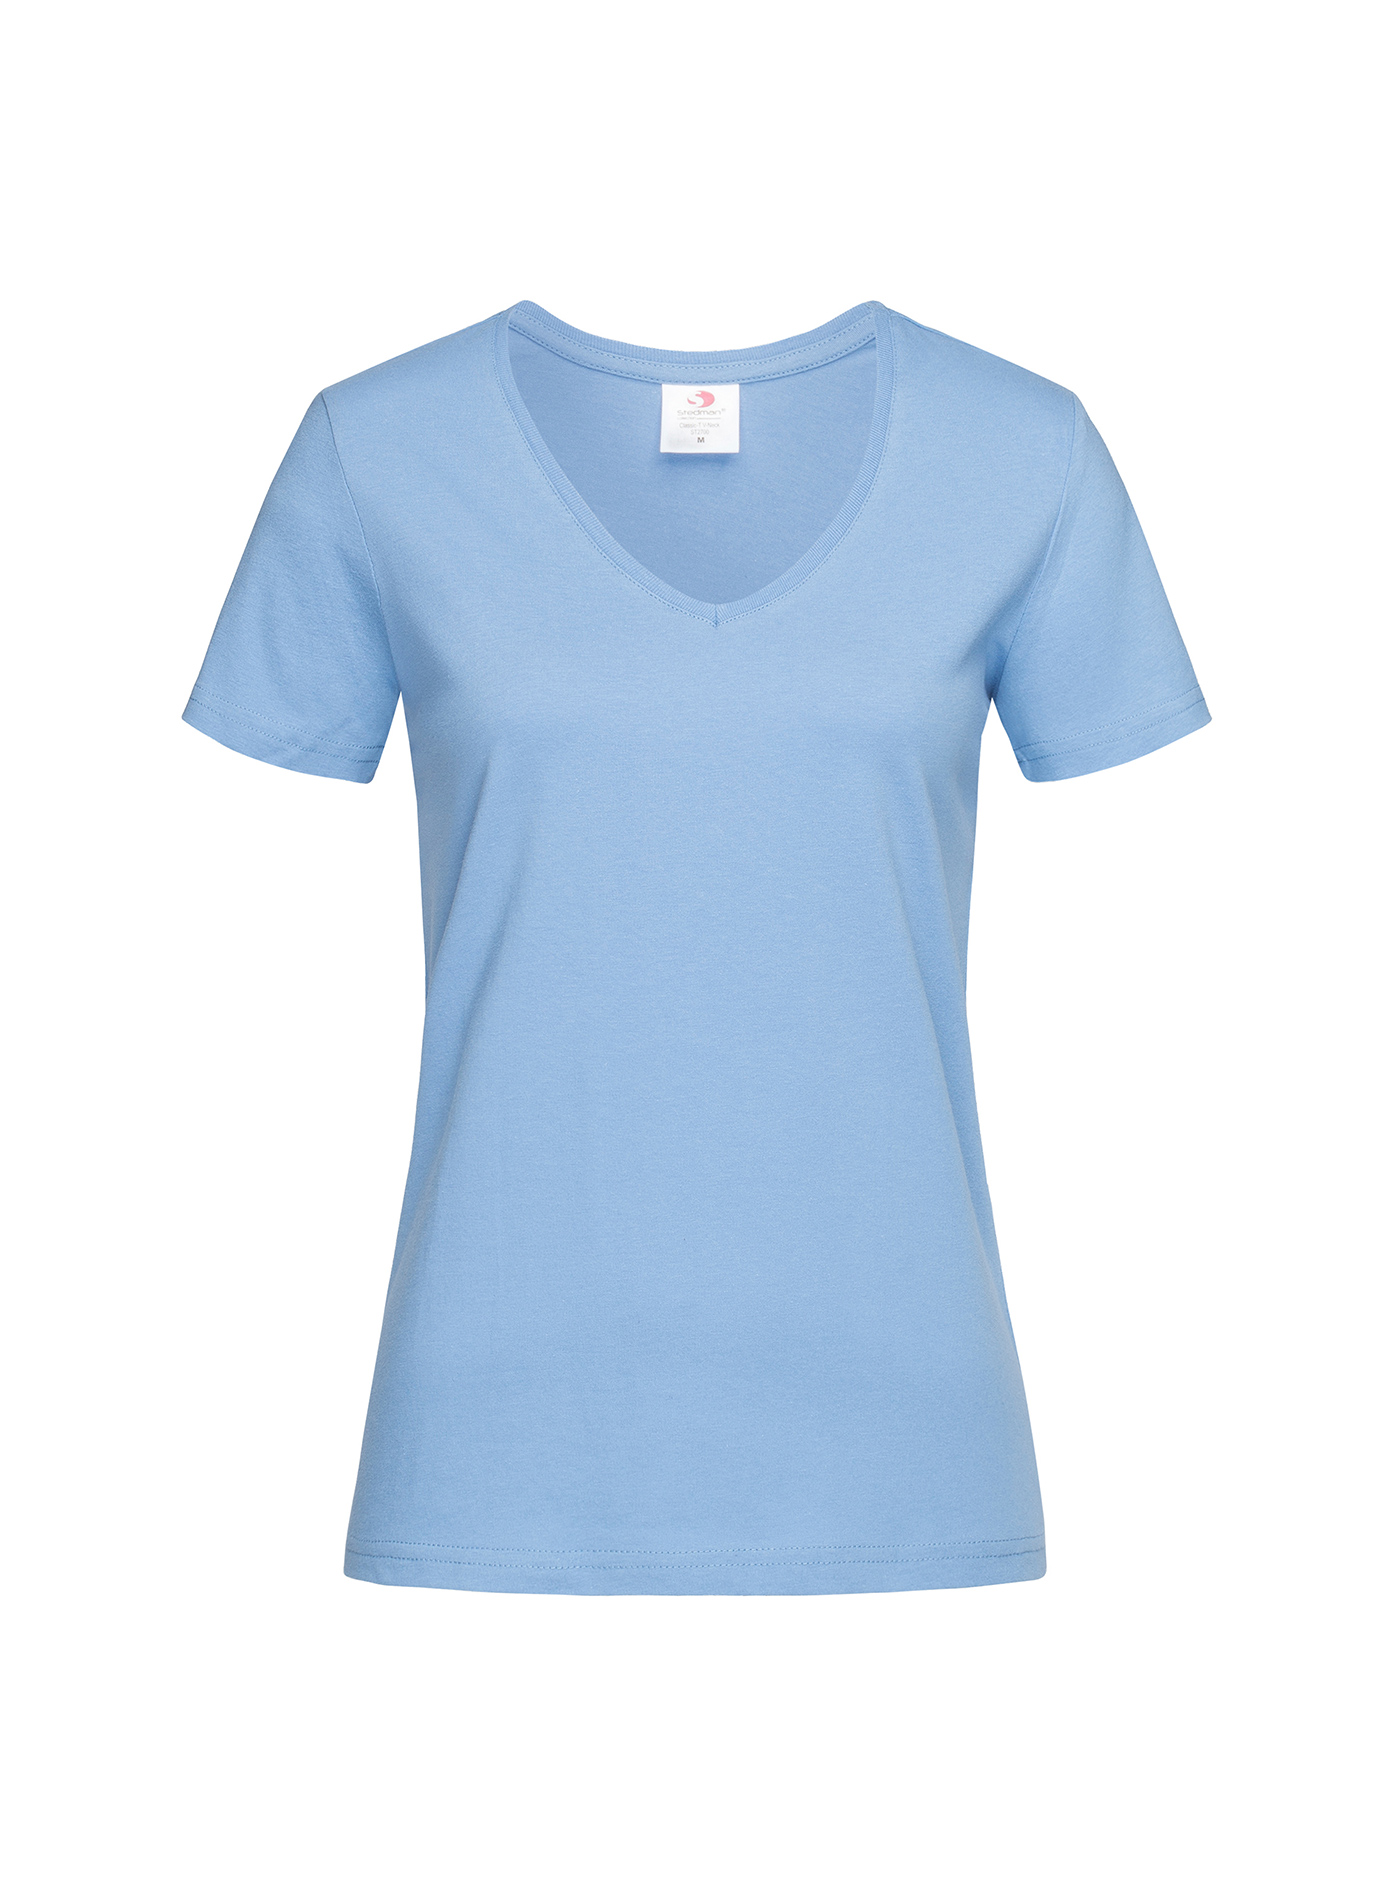 Dámské tričko s V-výstřihem Stedman - světle modrá XL